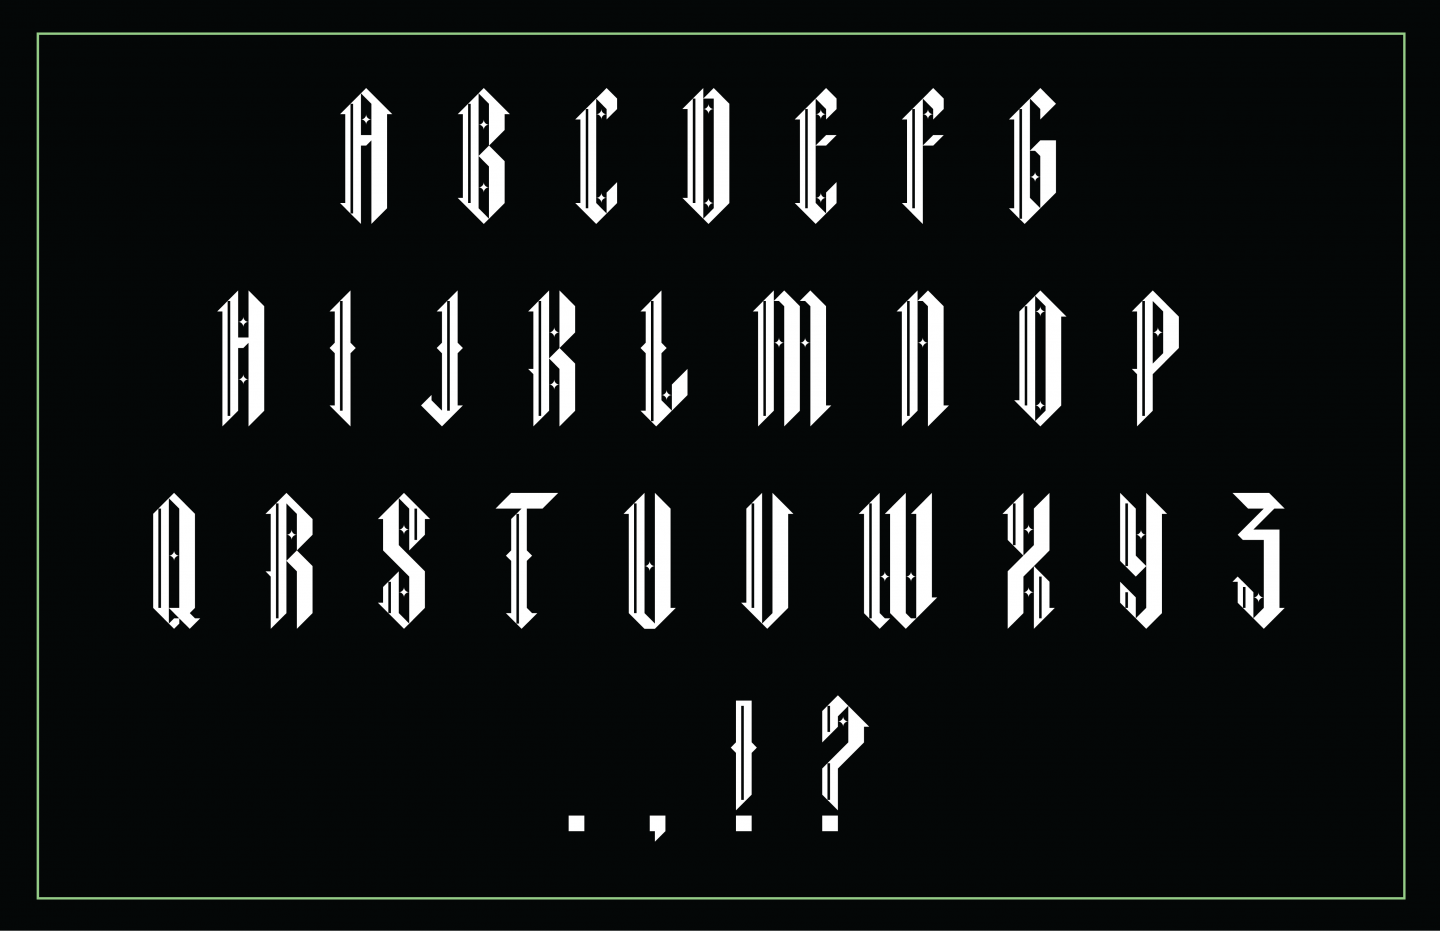 Twinkle Blackletter Typeface Design